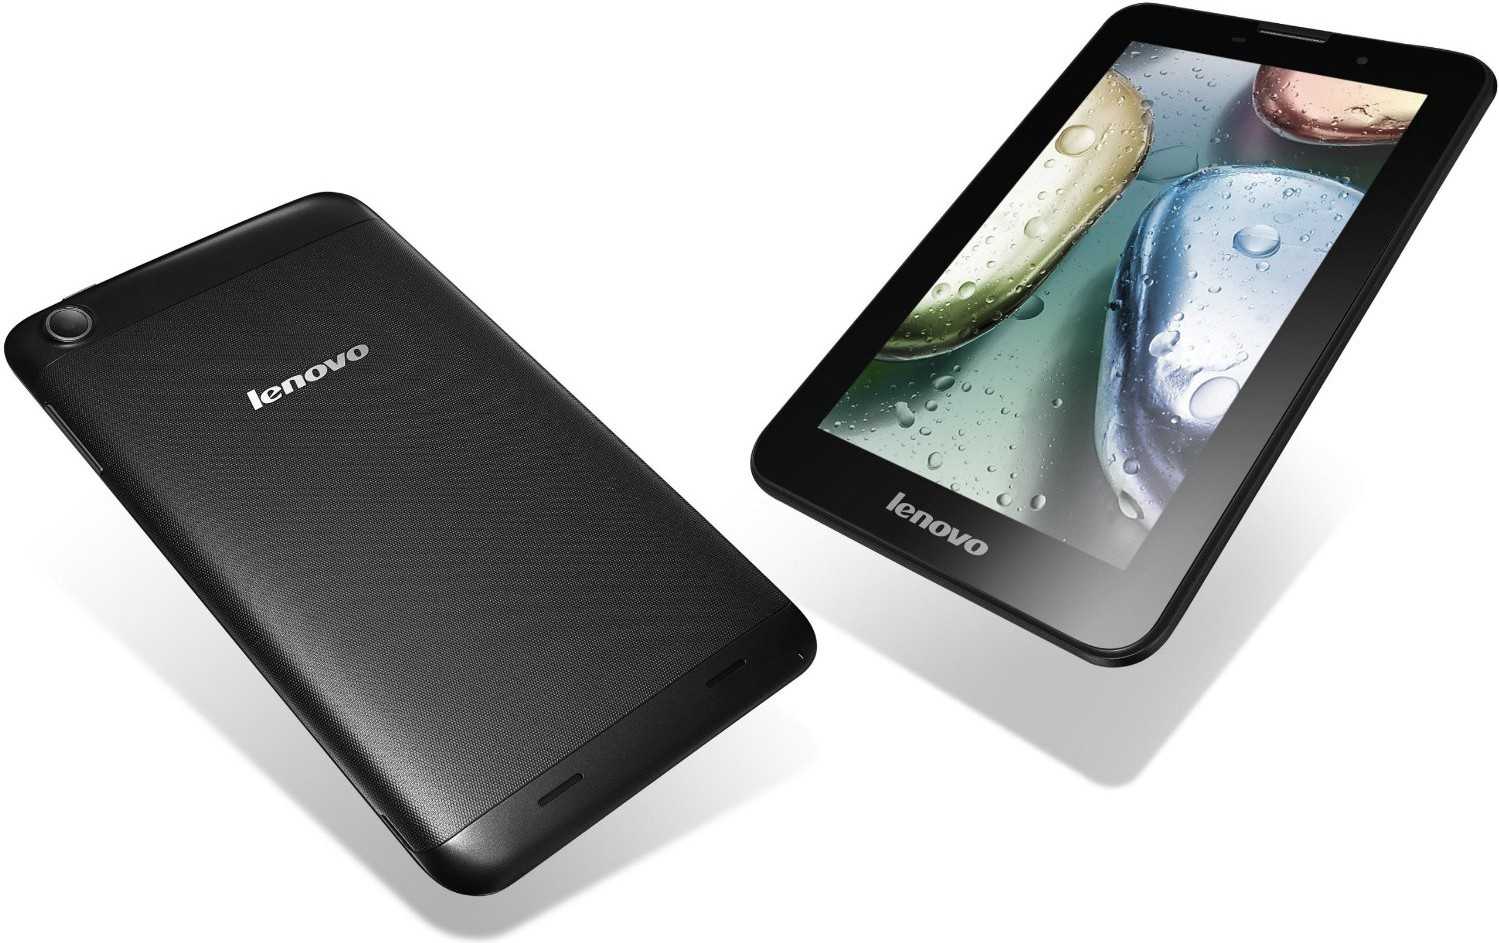 Lenovo ideatab a3000 16gb - купить , скидки, цена, отзывы, обзор, характеристики - планшеты